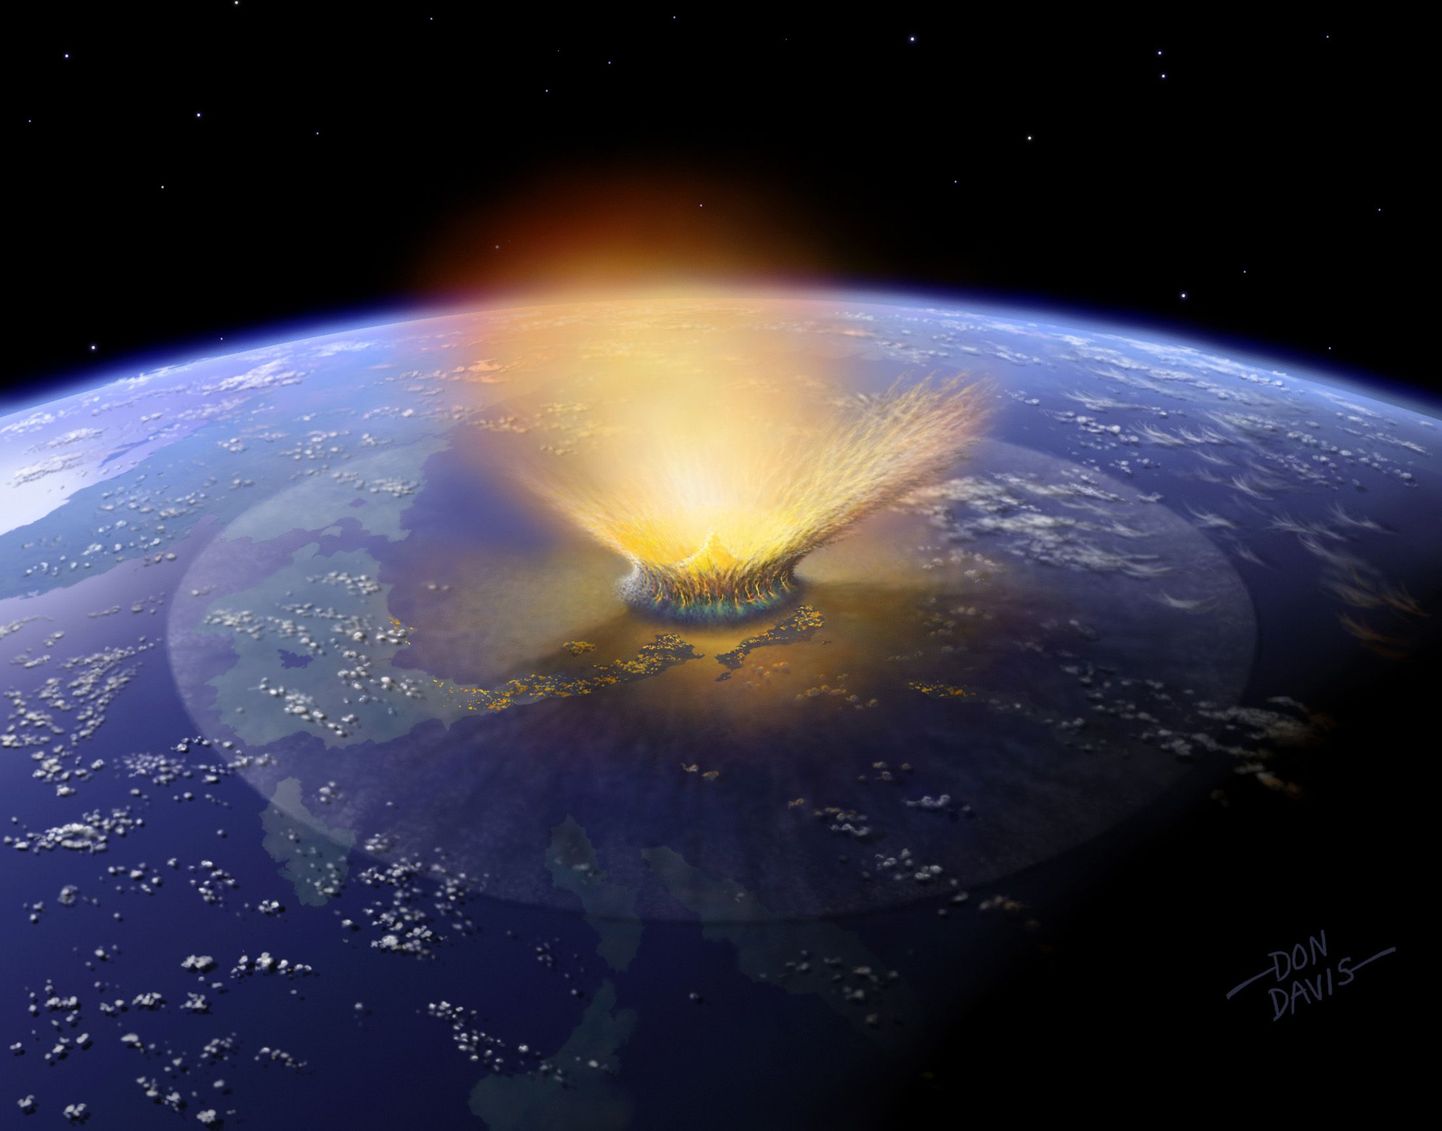 Hiidsisalikele sai saatuslikusk India ookeanisse langenud asteroid?